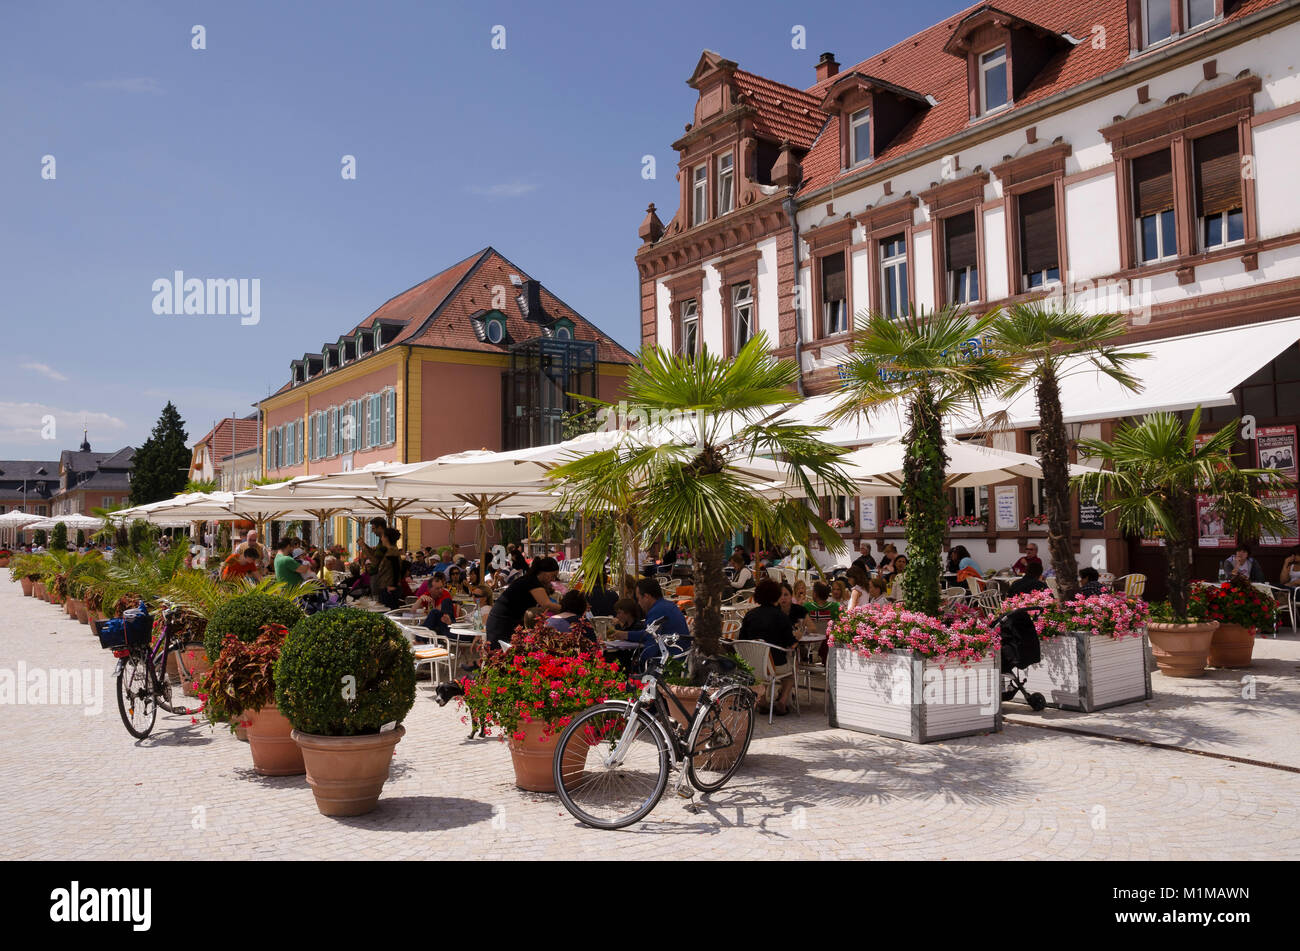 Cafe und Palais Hirsch, Schwetzingen, Baden-Wurttemberg, Germany, Europe Stock Photo